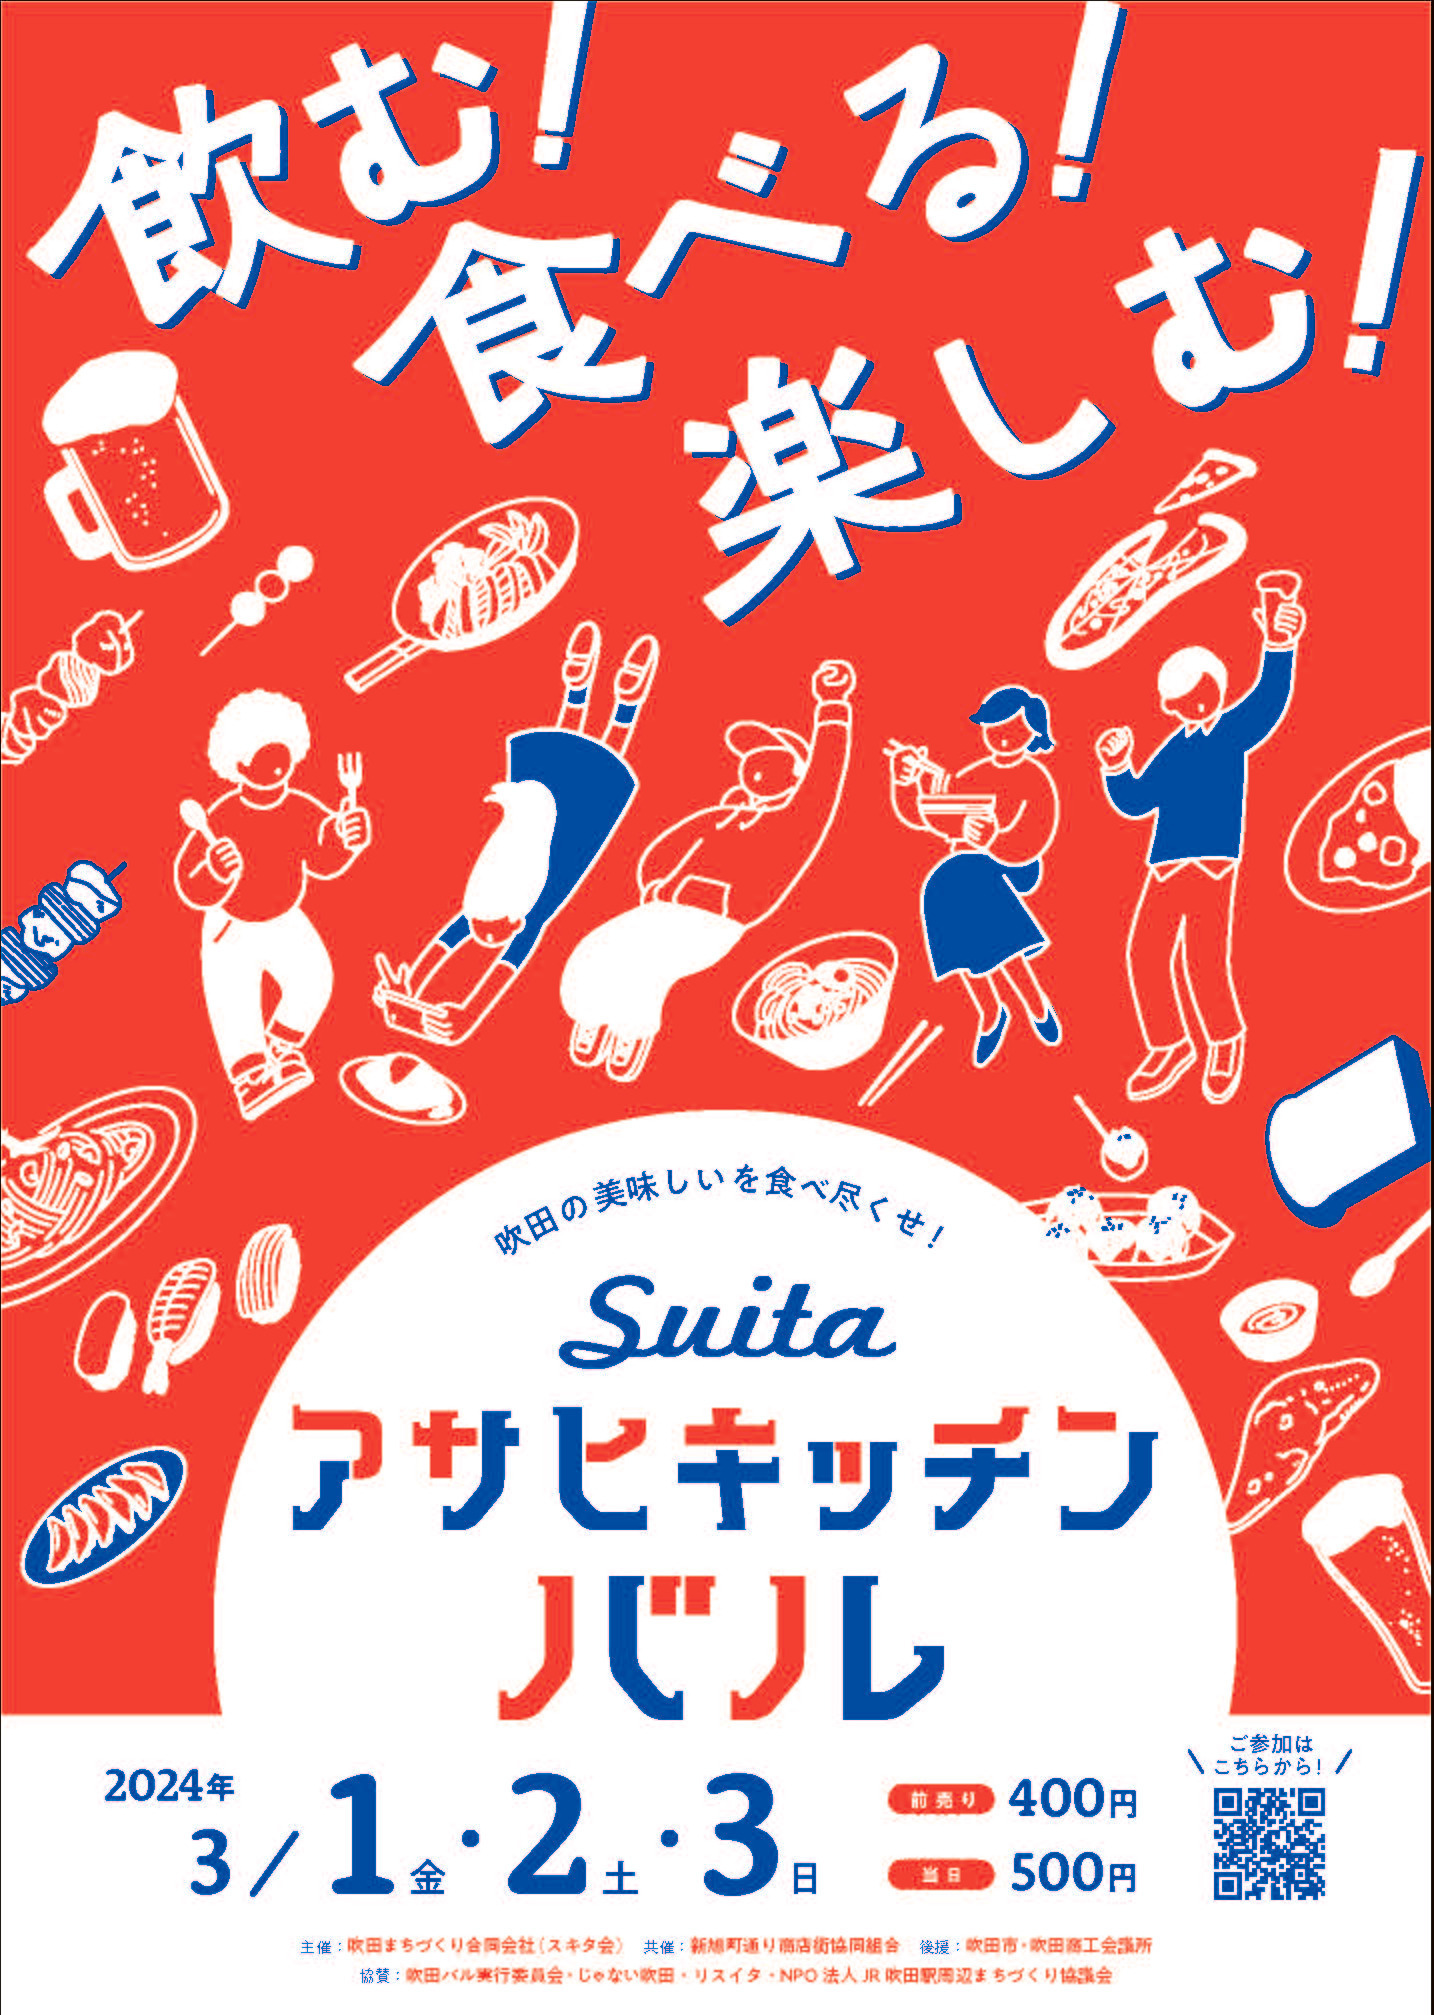 大阪・吹田のグルメが集結！食べ飲み歩きが楽しい
「吹田・アサヒキッチンバル」が3月1日～3日開催